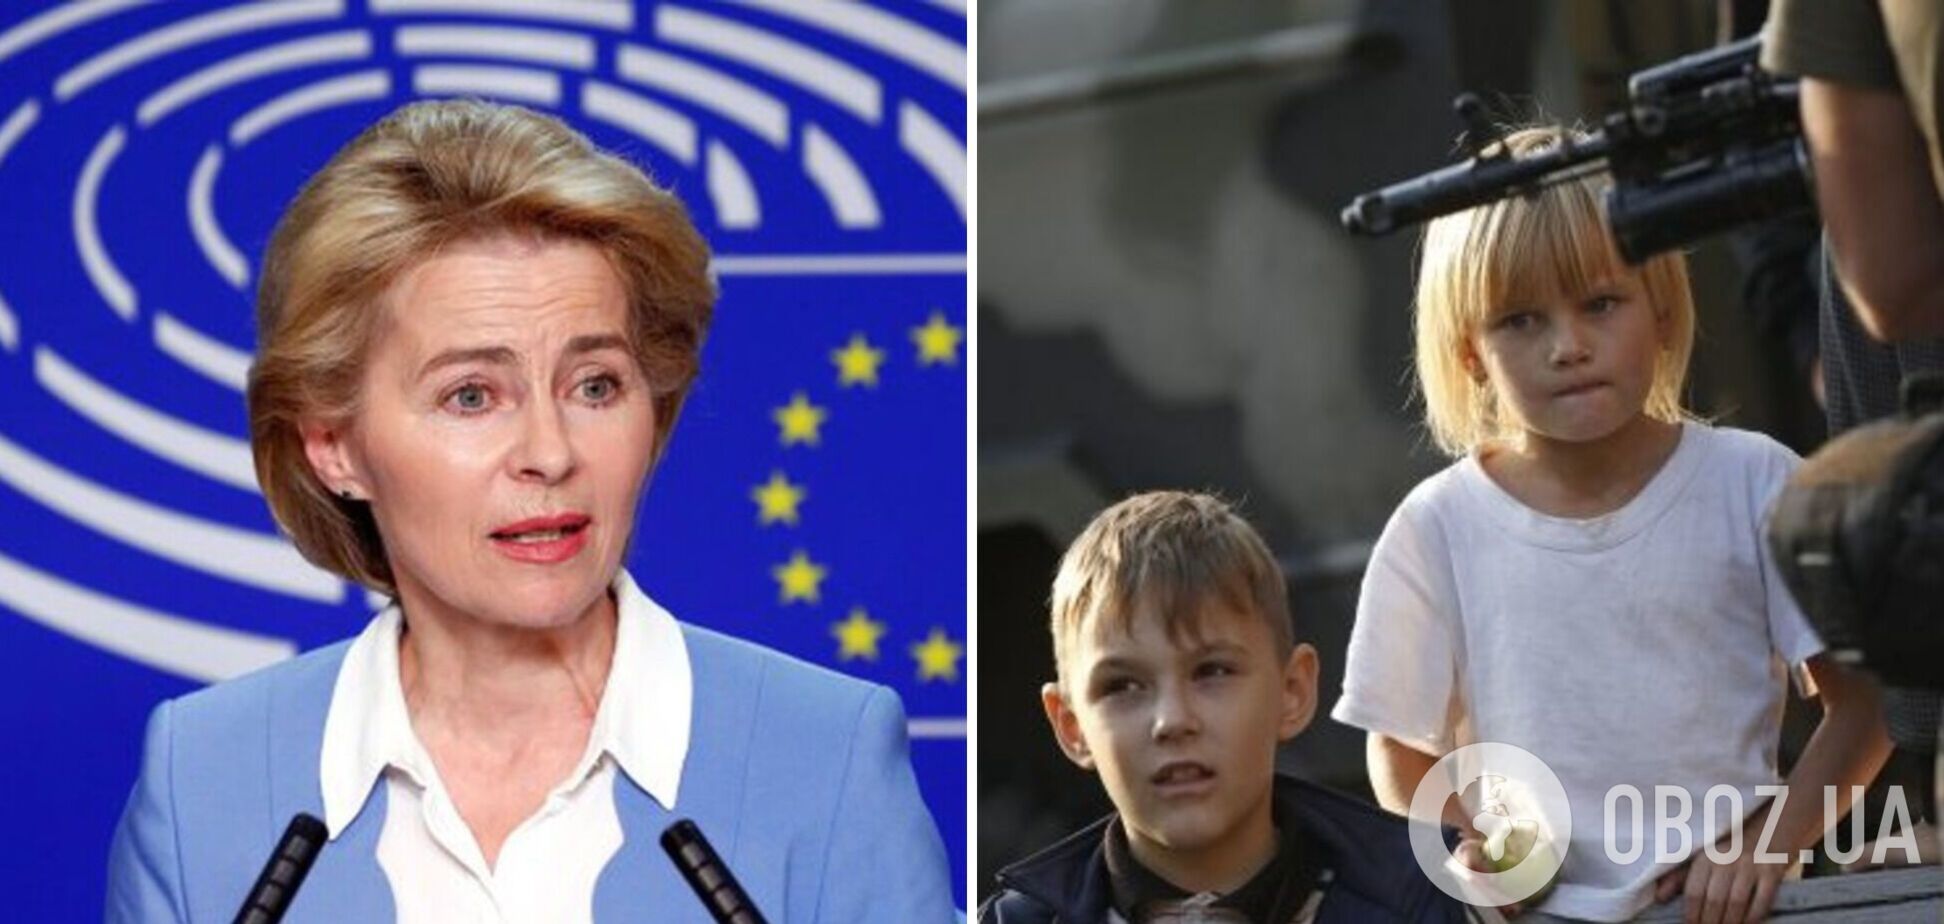 Еврокомиссия запустила инициативу по возвращению похищенных Россией детей в Украину, –  фон дер Ляйен